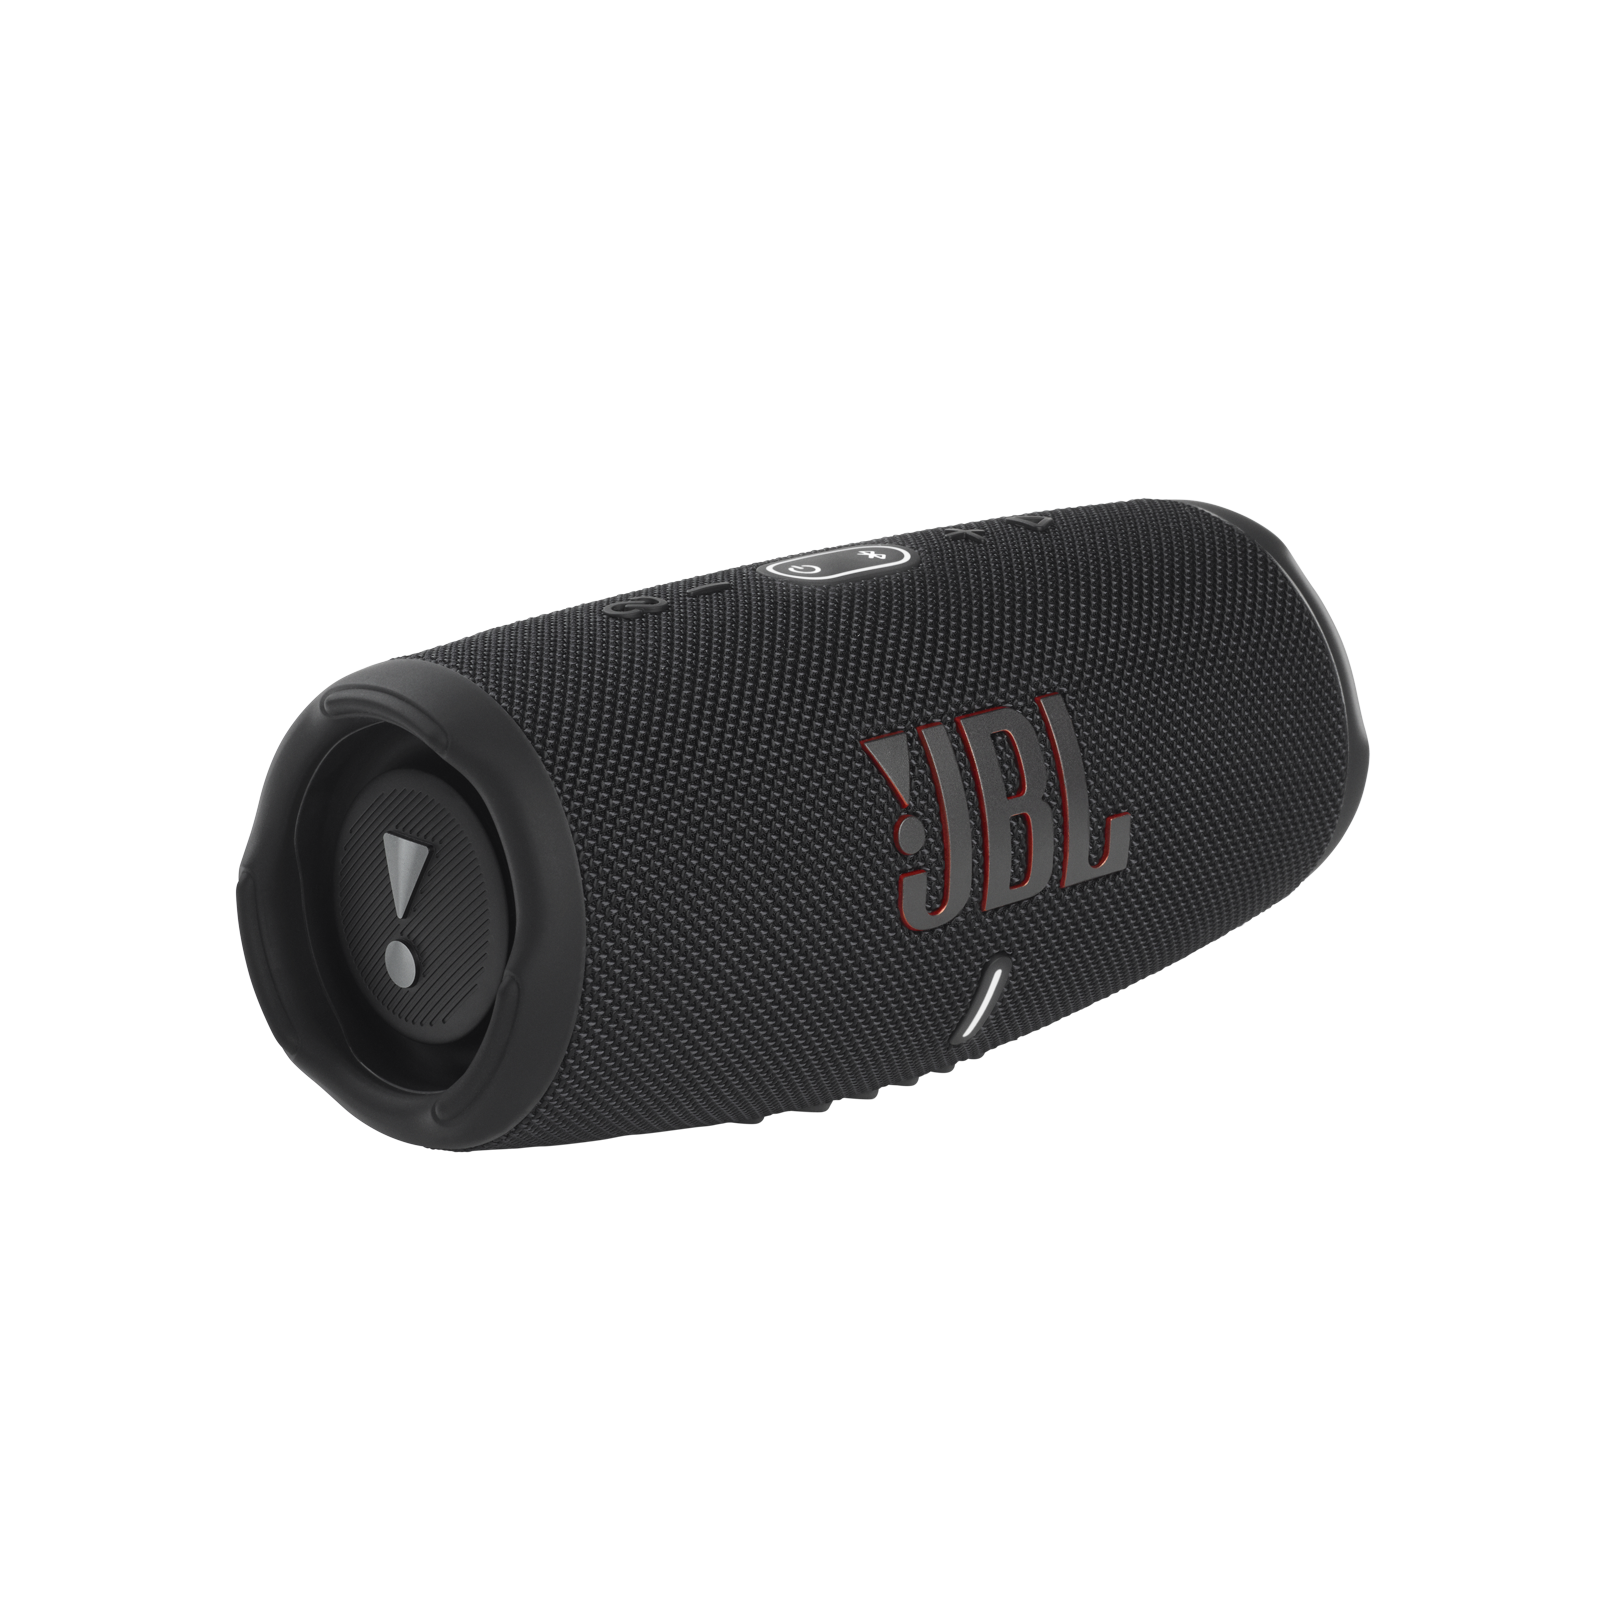 オープニング 大放出セール CHARGE5 JBL Bluetooth ブラック